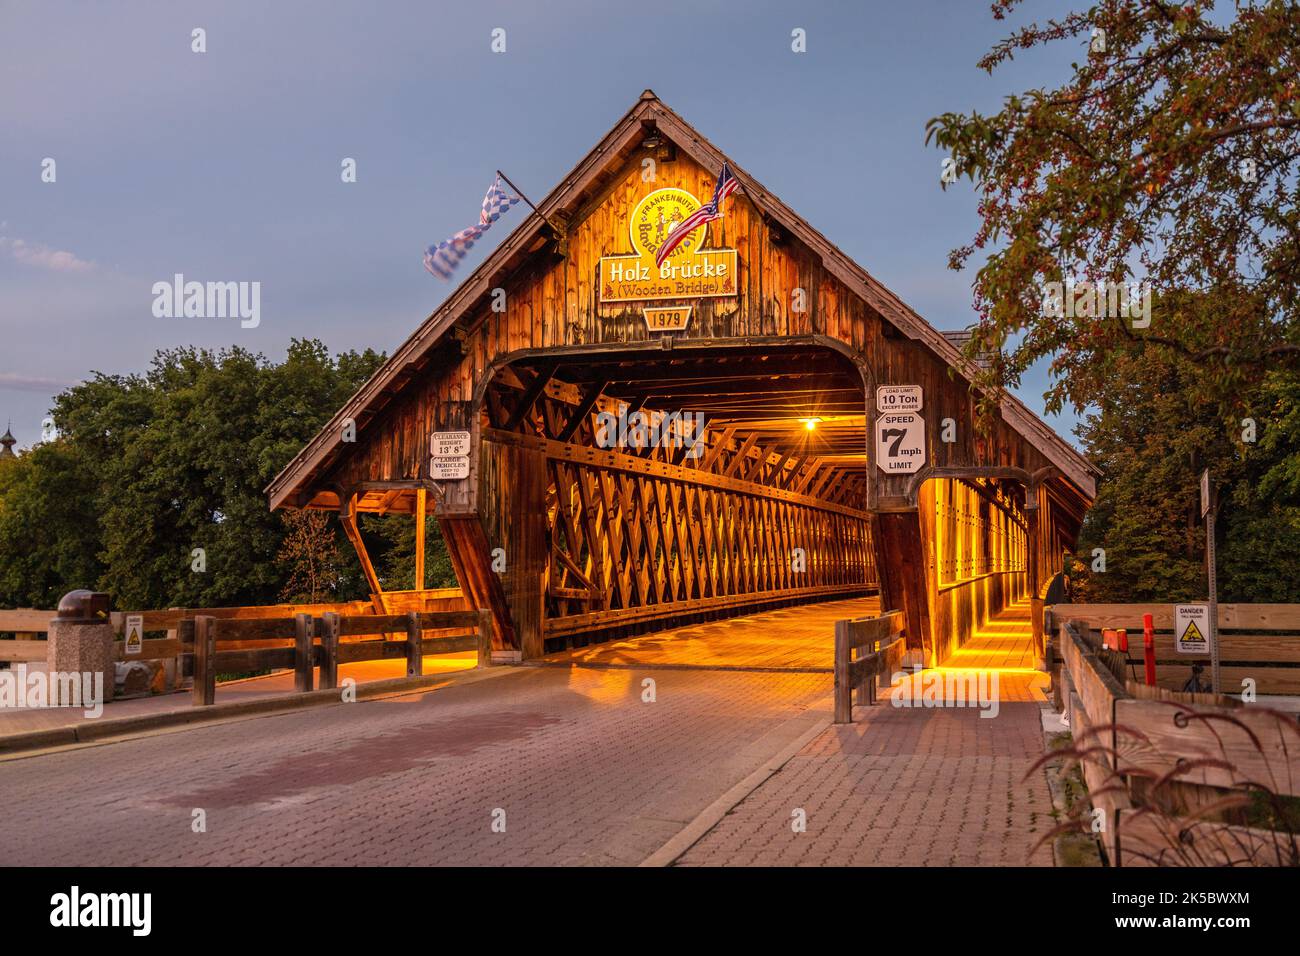 Frankenmuth hölzerne überdachte Brücke bei Nacht, Holz Brucke erbaut vom Bayerischen Gasthof über den Cass in der bayerischen Stadt frankenmuth in mich Stockfoto